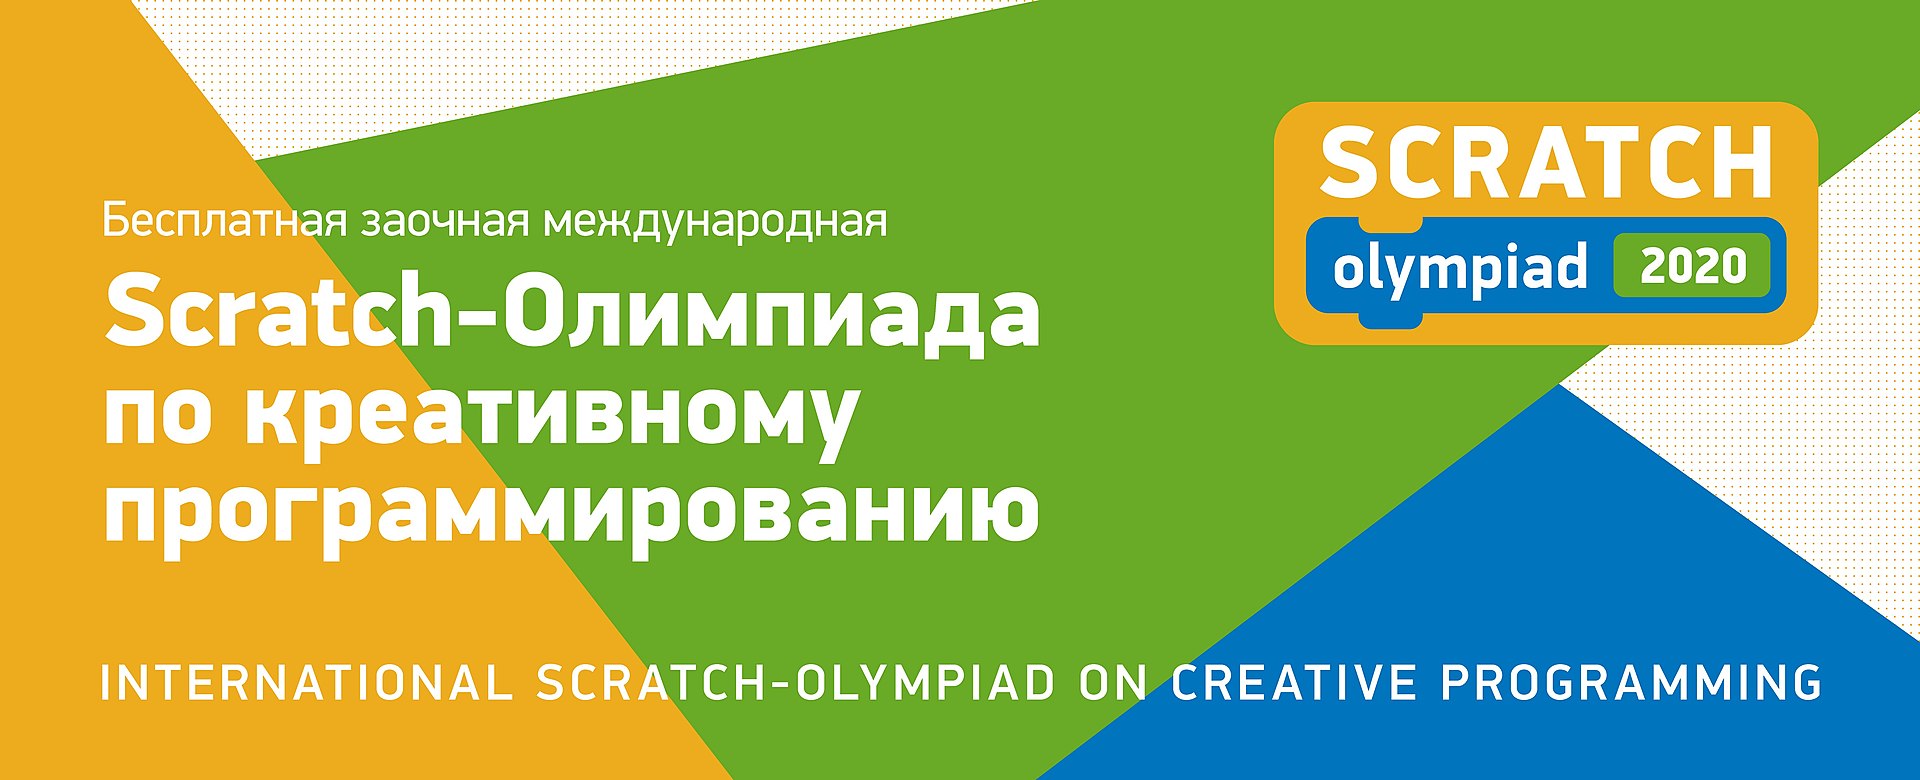 Стартует Международная олимпиада по креативному программированию для школьников